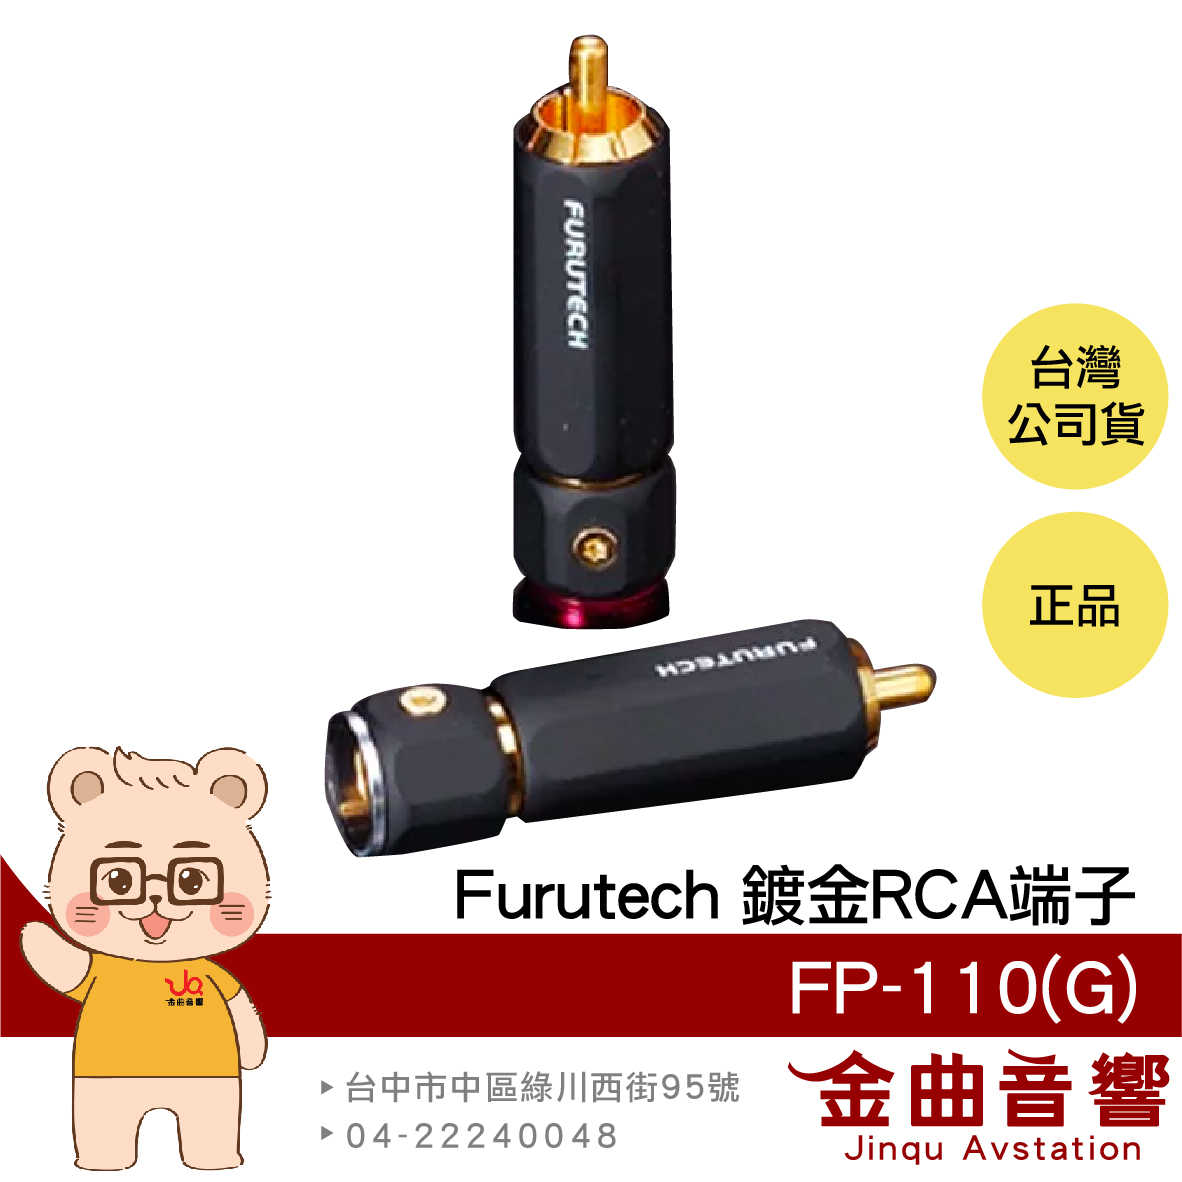 FURUTECH 古河 FP-110(G) 鍍金 鎖式 RCA端子 | 金曲音響